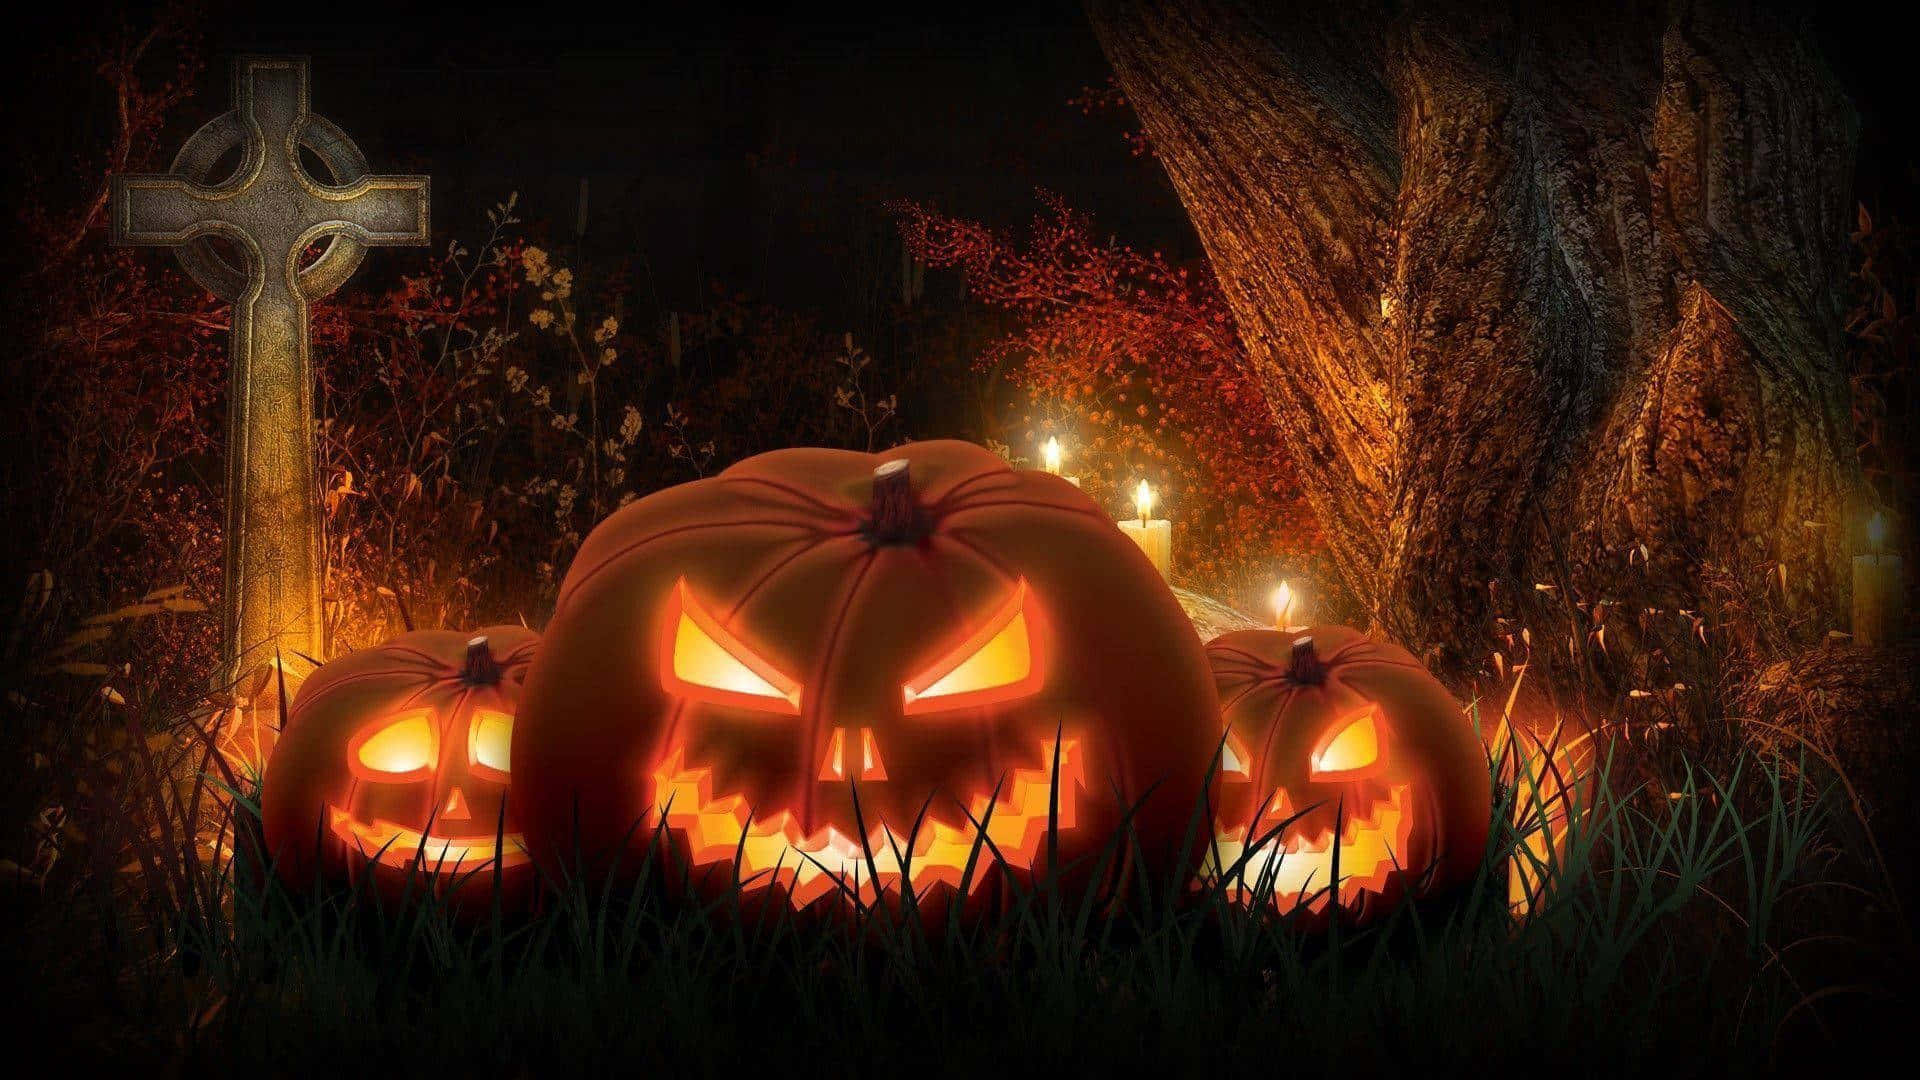 Spooky Halloween Pumpkins Night Scene Wallpaper